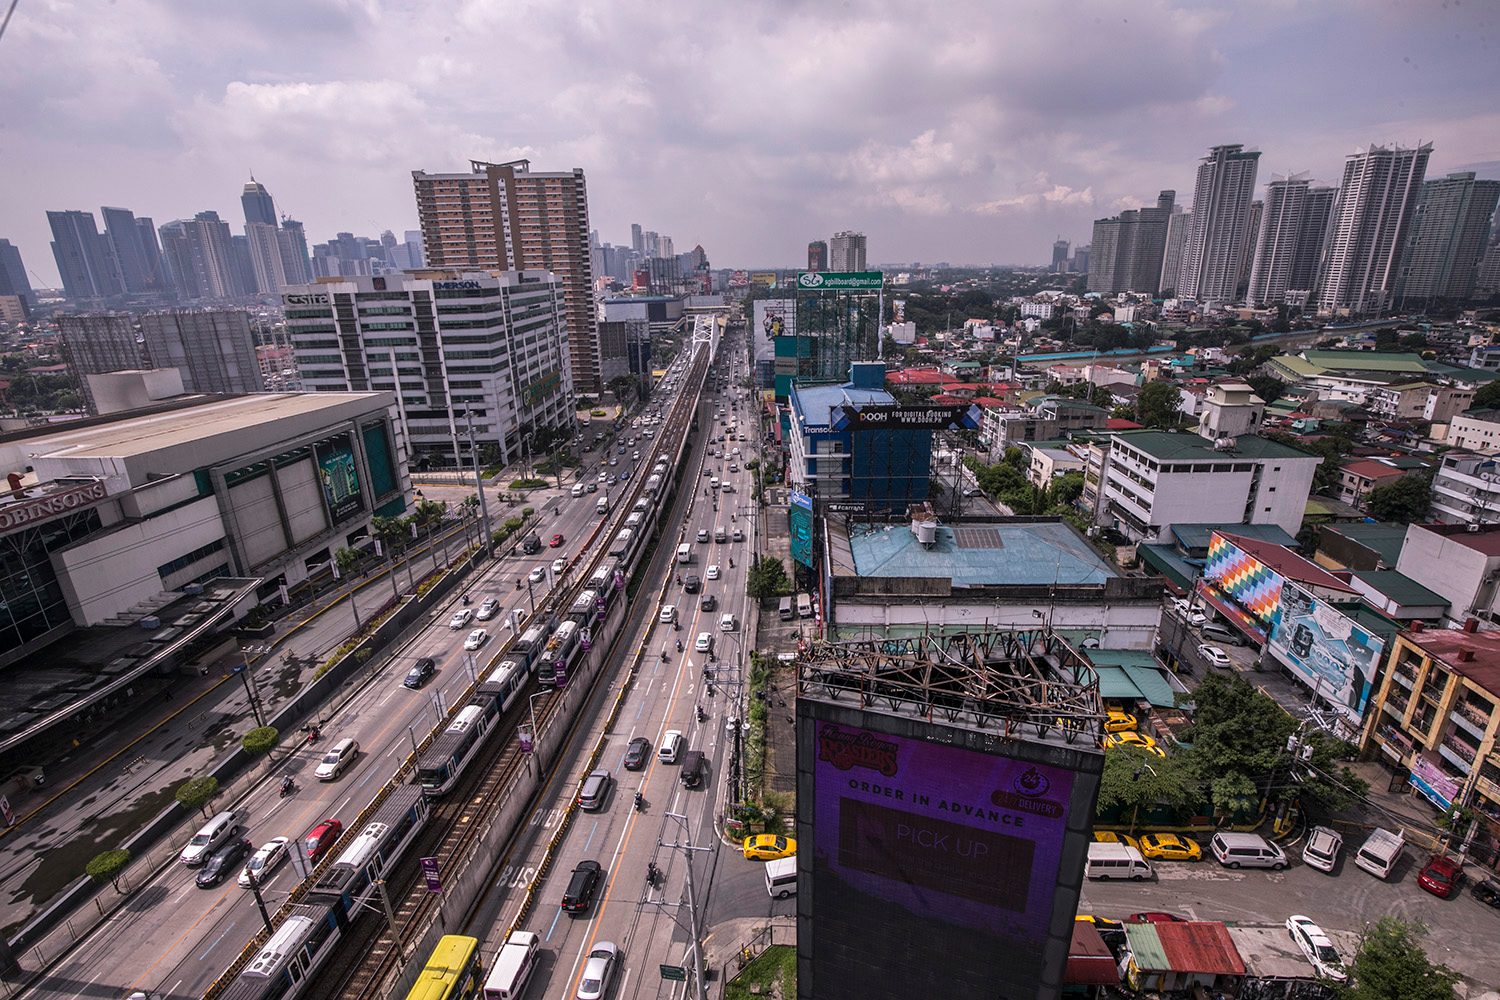 Slow recovery: Philippine economy slumps 11.5% in Q3 2020